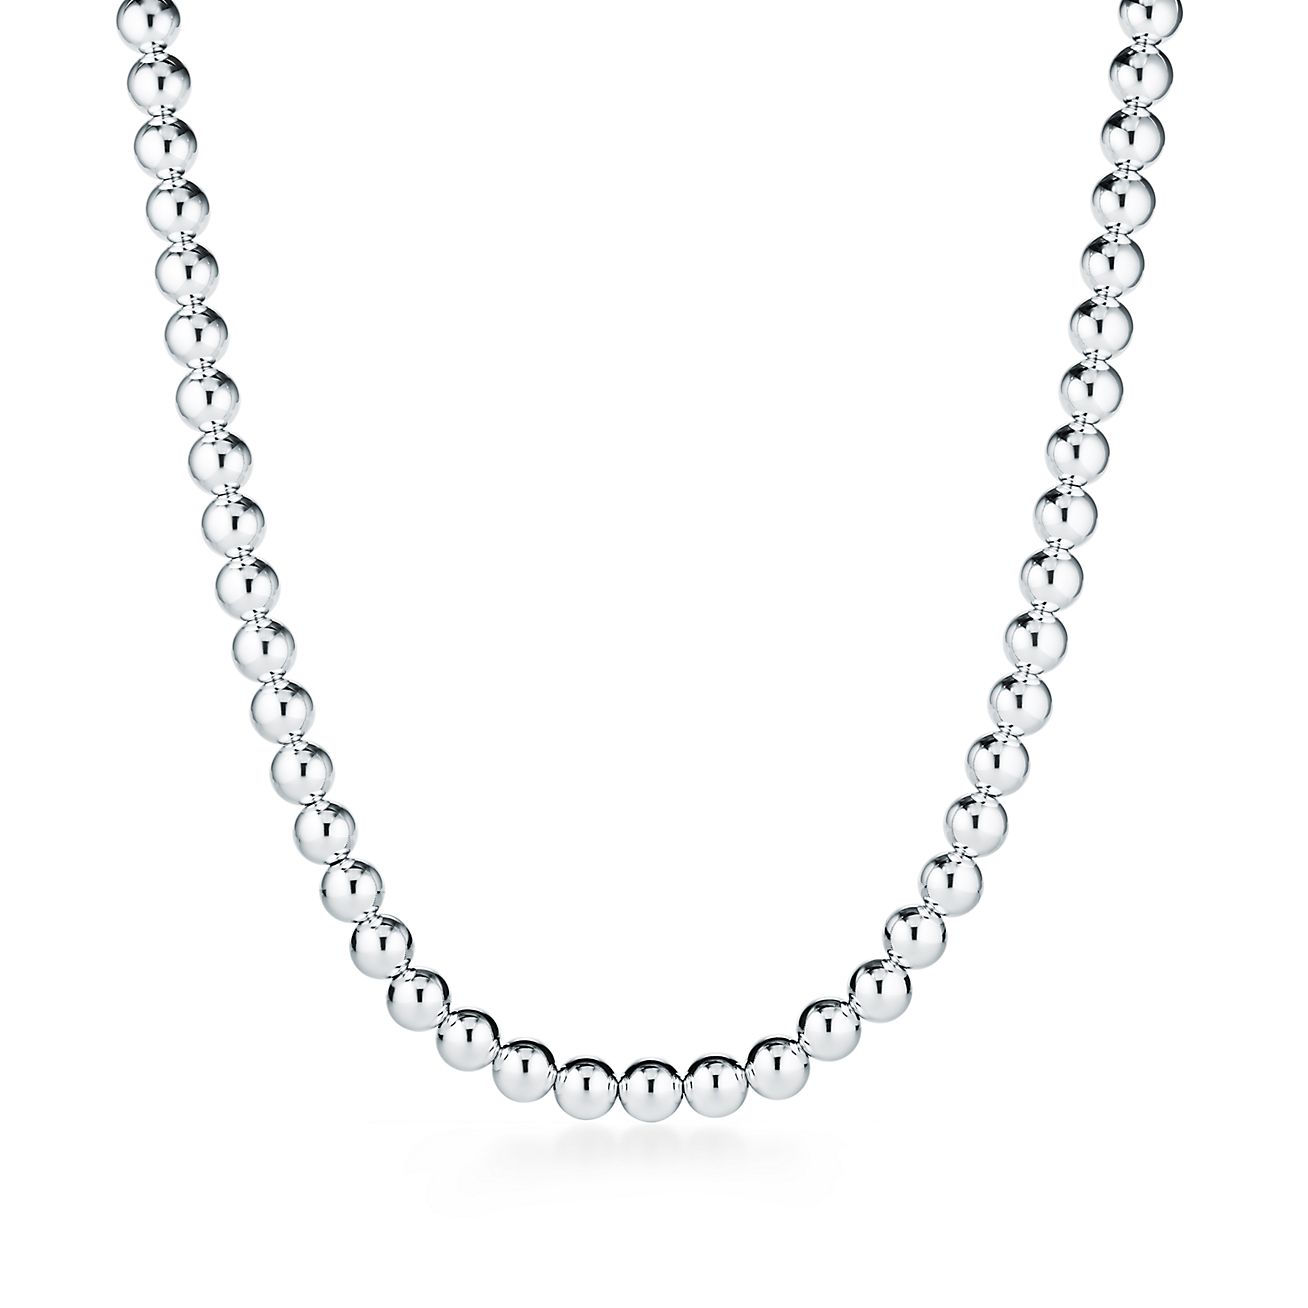 Gift For Her Black Silver Multicolor Three Choise Sphere Design 925K Sterling Silver Necklace Bracelet Set